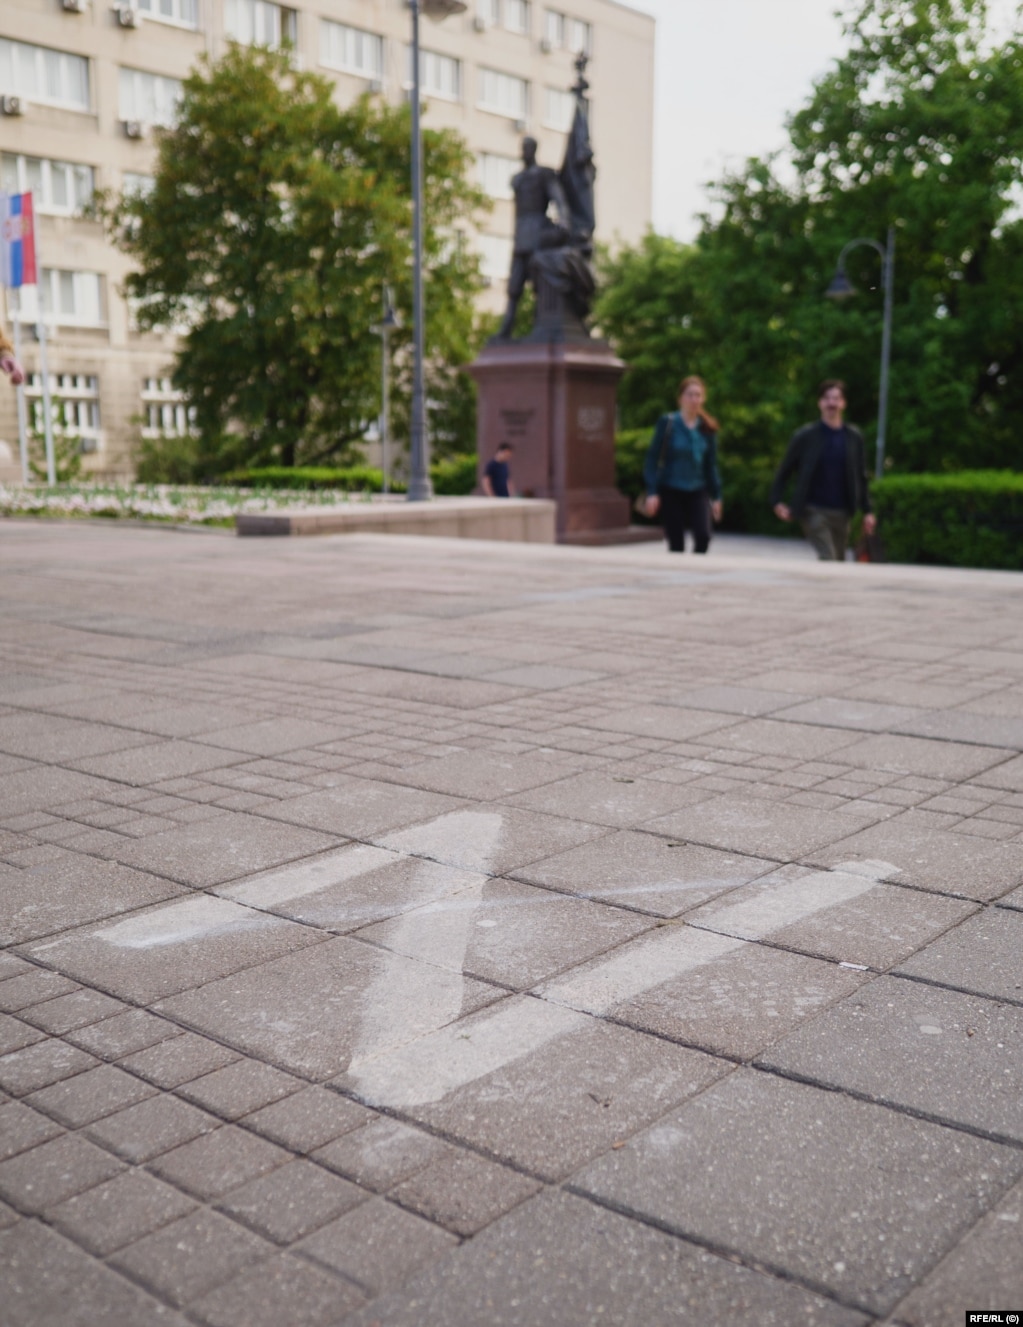 Një "Z" e kryqëzuar në tokë para një statuje të Nikolait II, carit të fundit të Rusisë. Aktivistët pro-rusë kanë mbajtur disa mitingje këtë vit dhe para se të marshojnë nëpër qendër të Beogradit, ata mblidhen te kjo statujë.